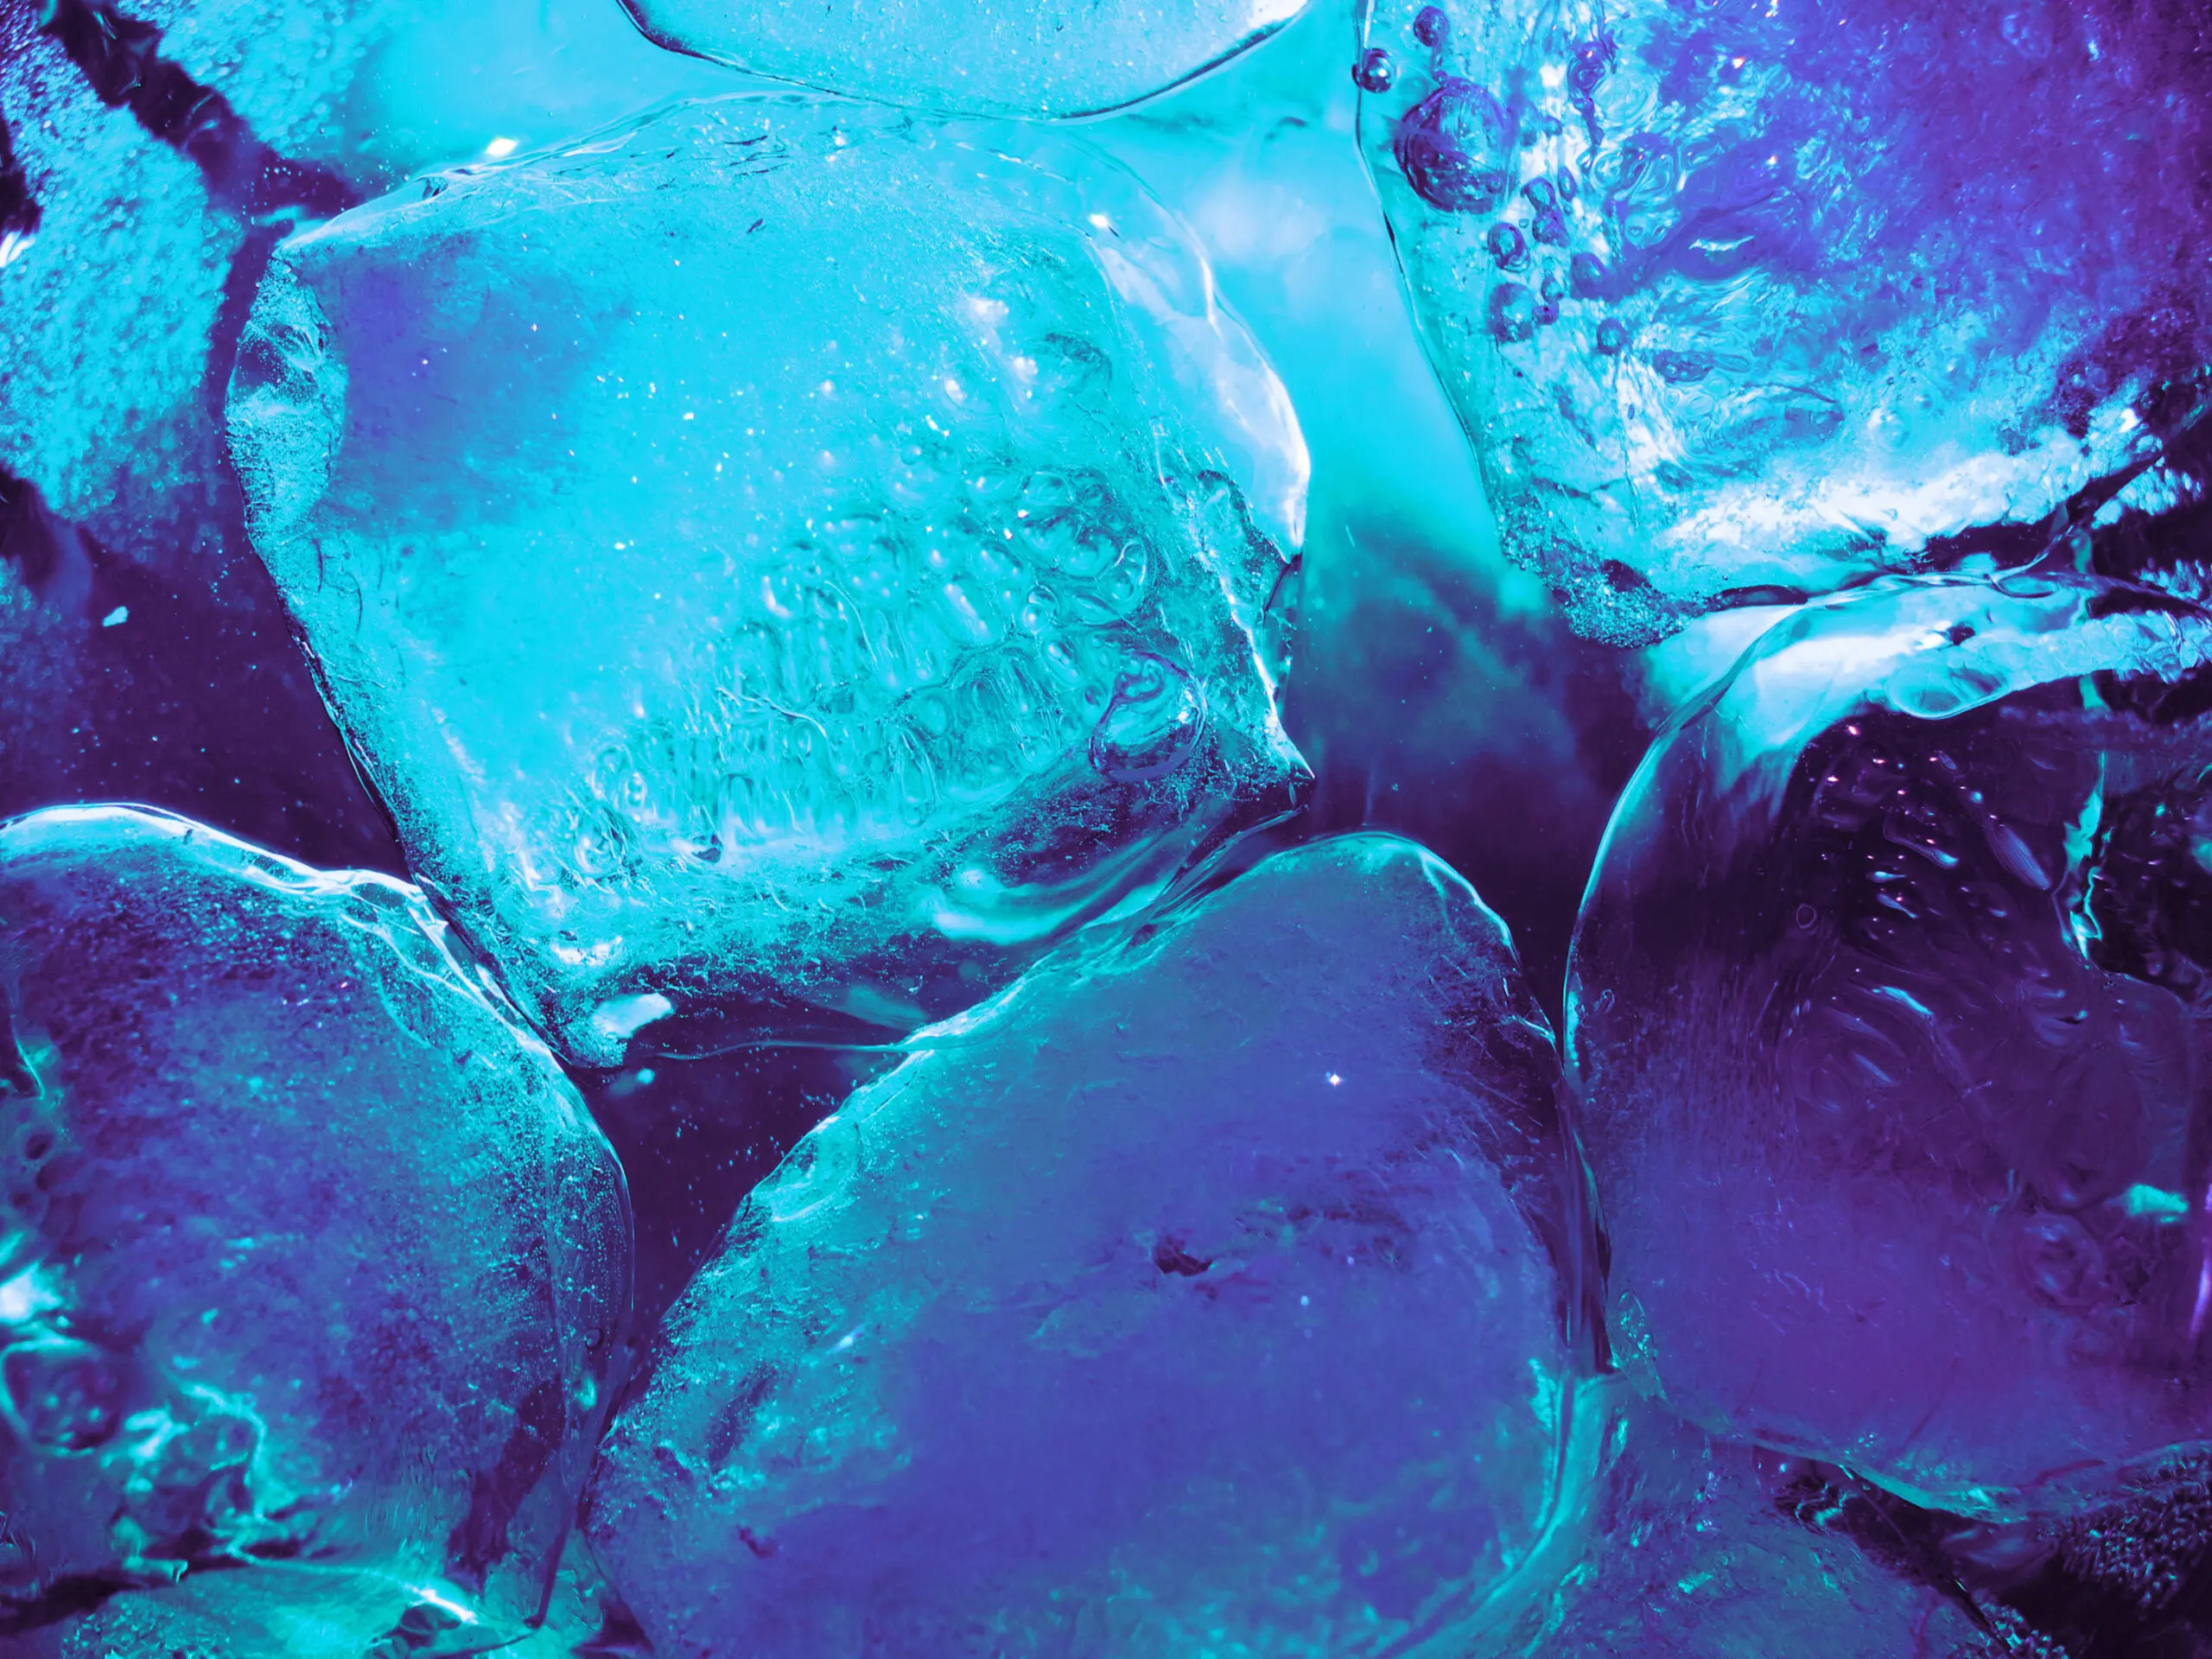 Wandbild (5548) Blue Ice Cubes präsentiert: Stillleben,Technik,Kreatives,Abstrakt,Essen und Getränke,Modern,Sonstige Stillleben,Detailaufnahmen